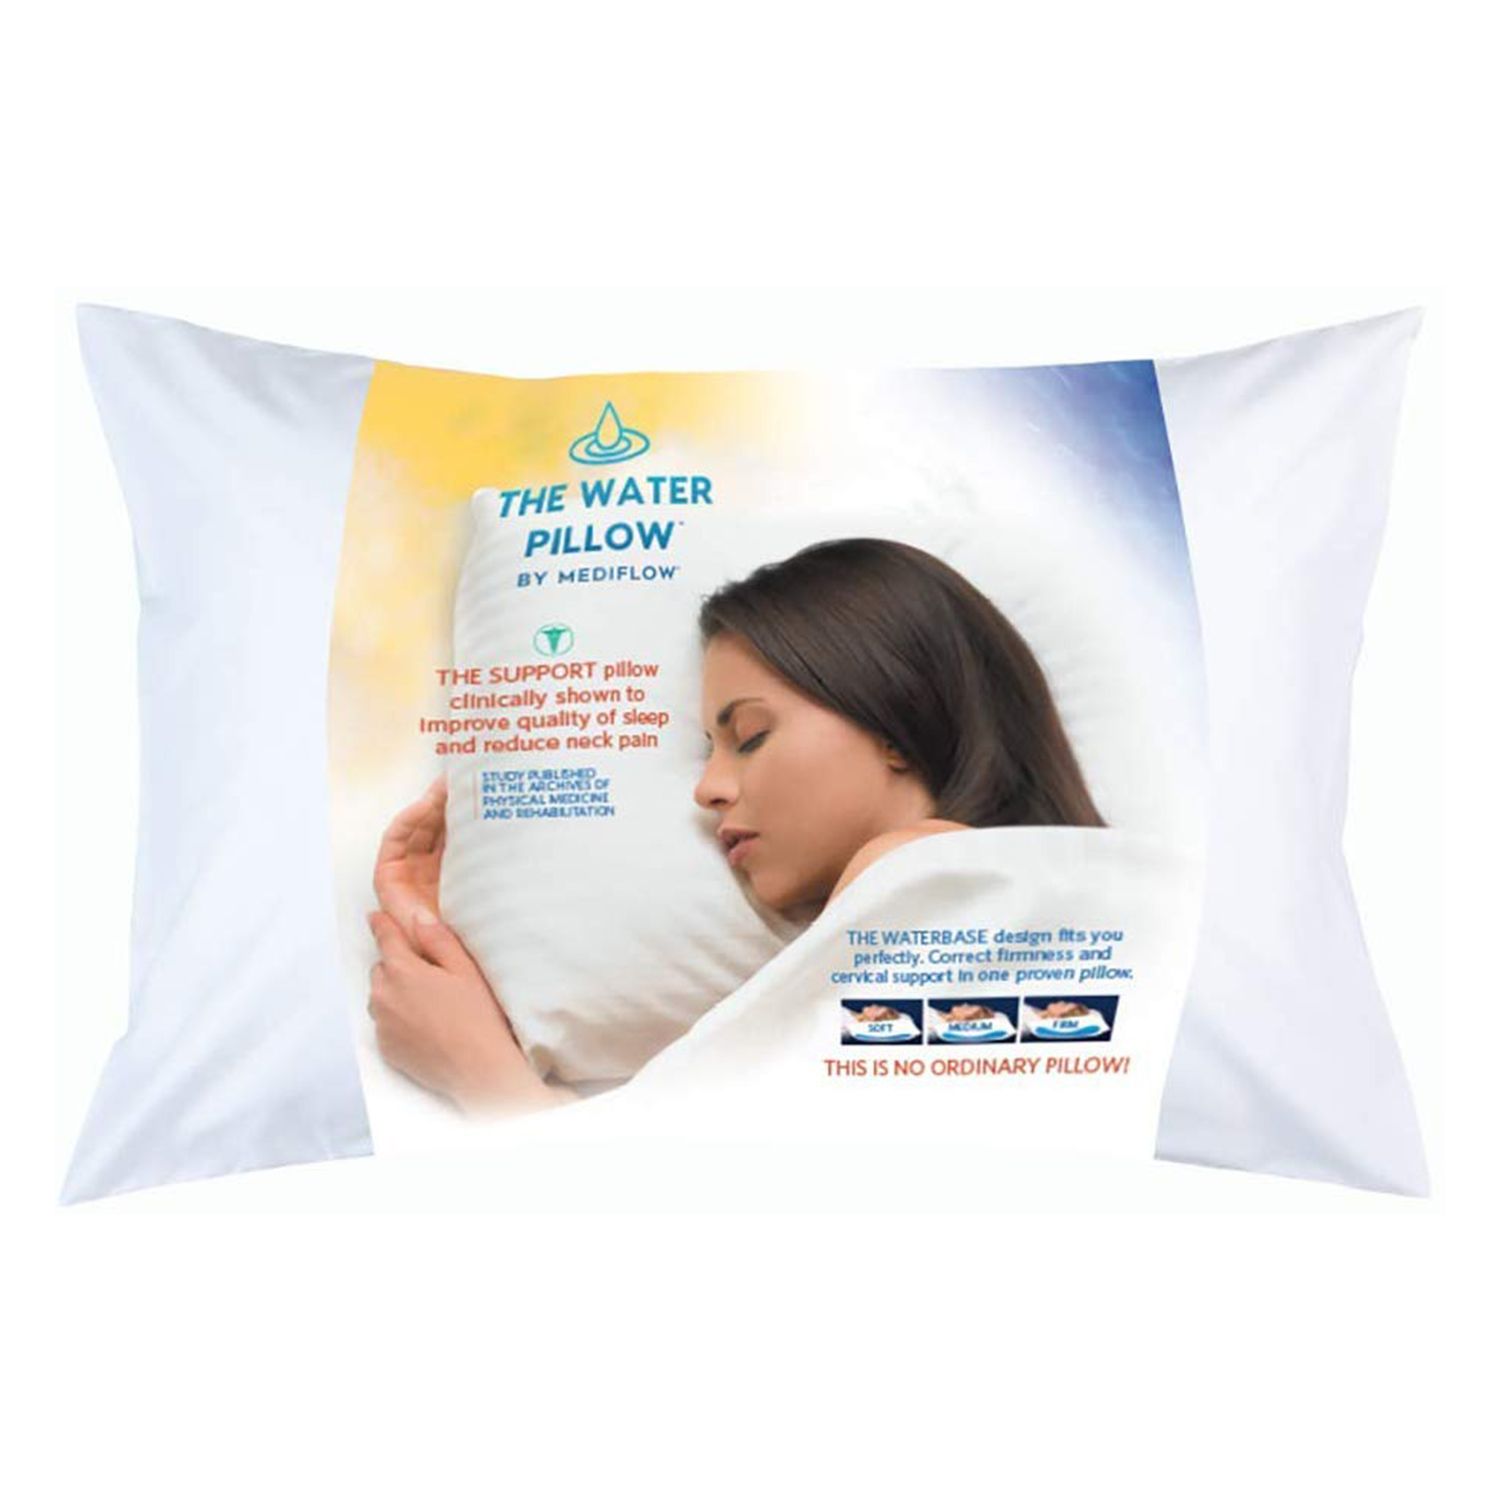 Mediflow Fiber: The First & Original Water Pillow